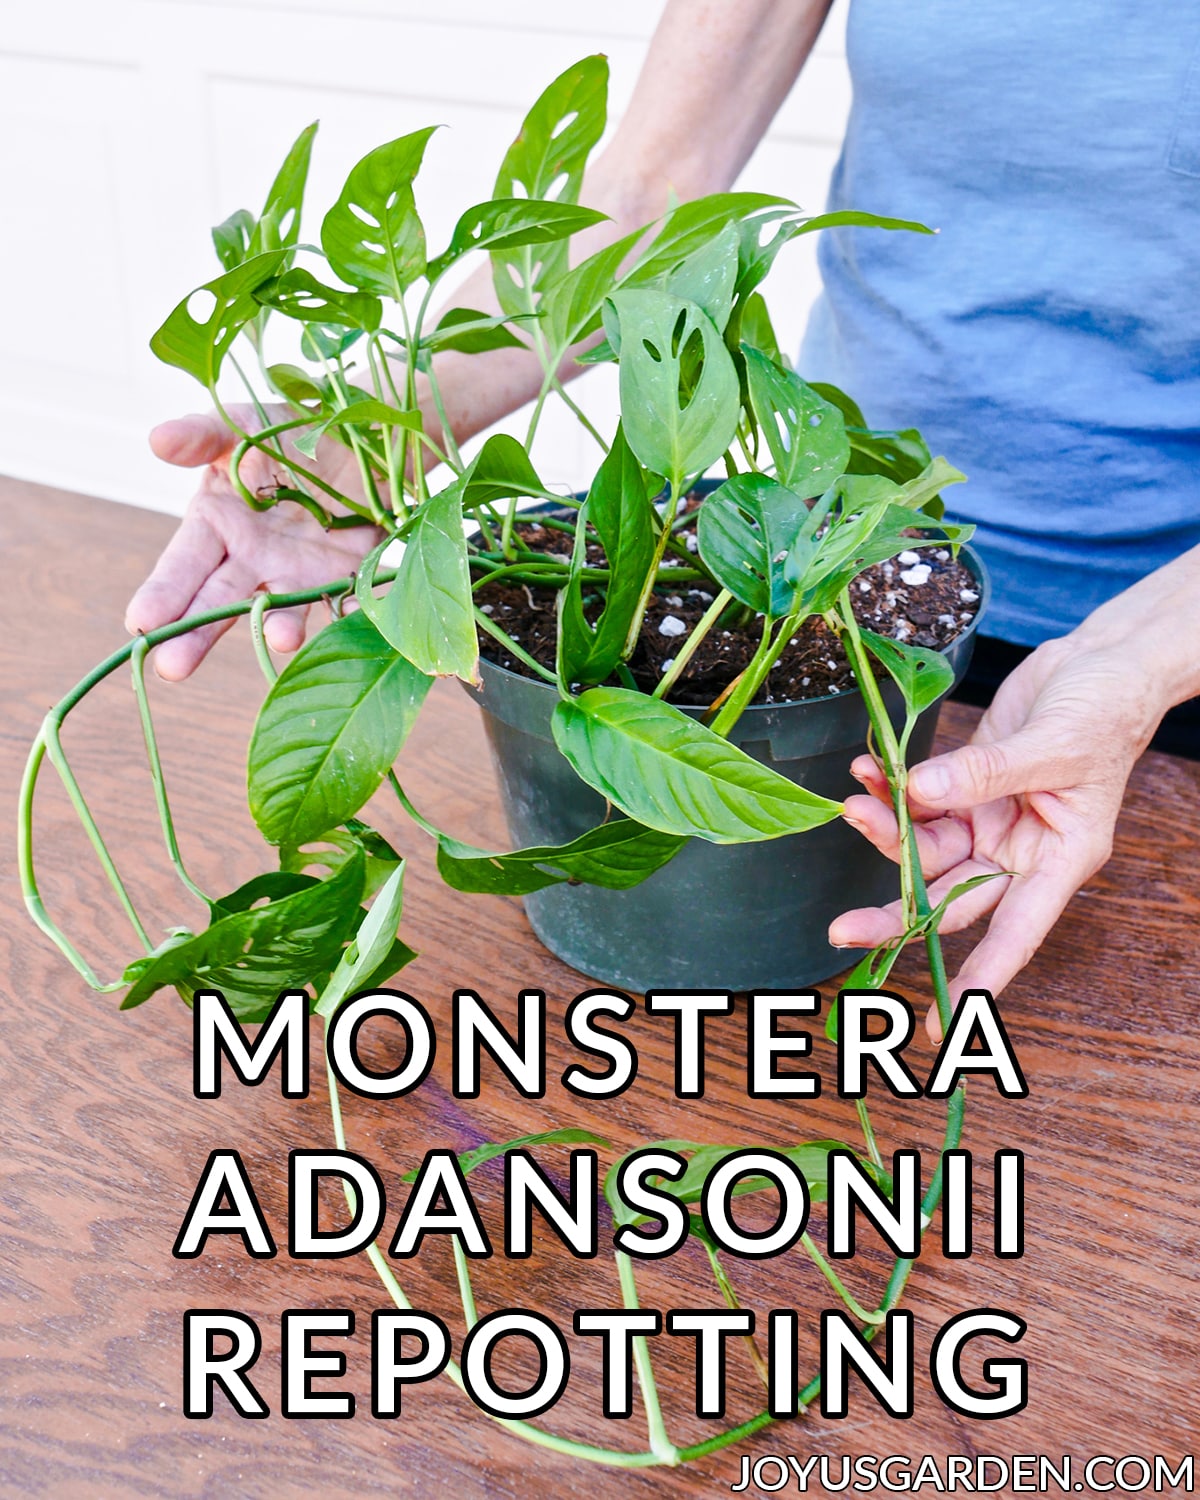  Monstera Adansonii Repotting: خليط التربة للاستخدام &amp; amp؛ خطوات يجب اتخاذها